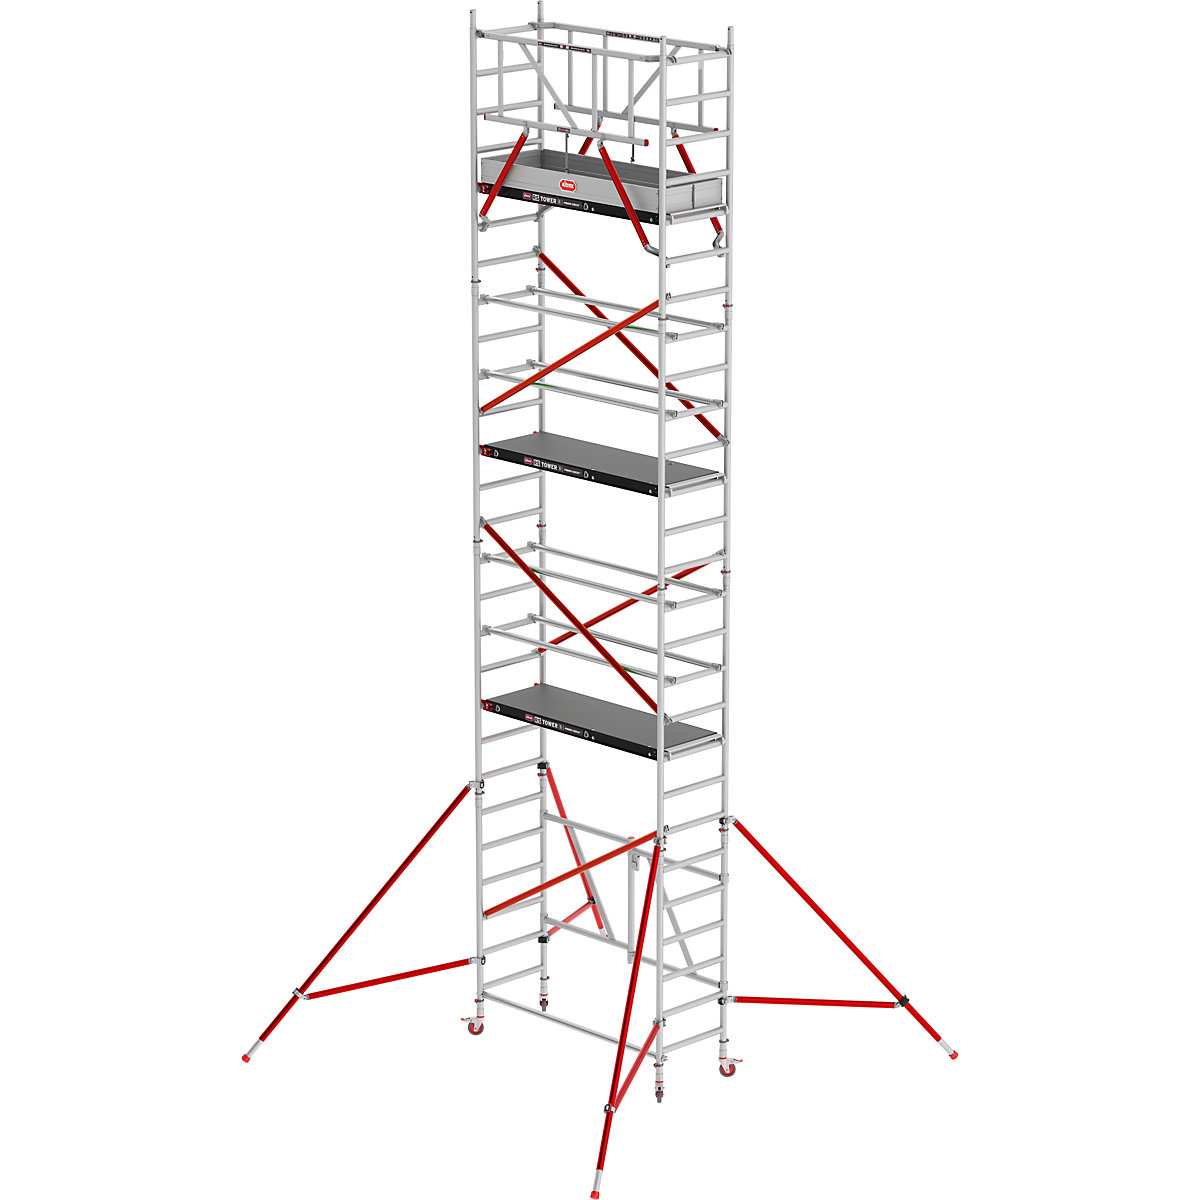 Notranji oder RS TOWER 54 – Altrex, ploščad Fiber-Deck®, delovna višina 8,80 m